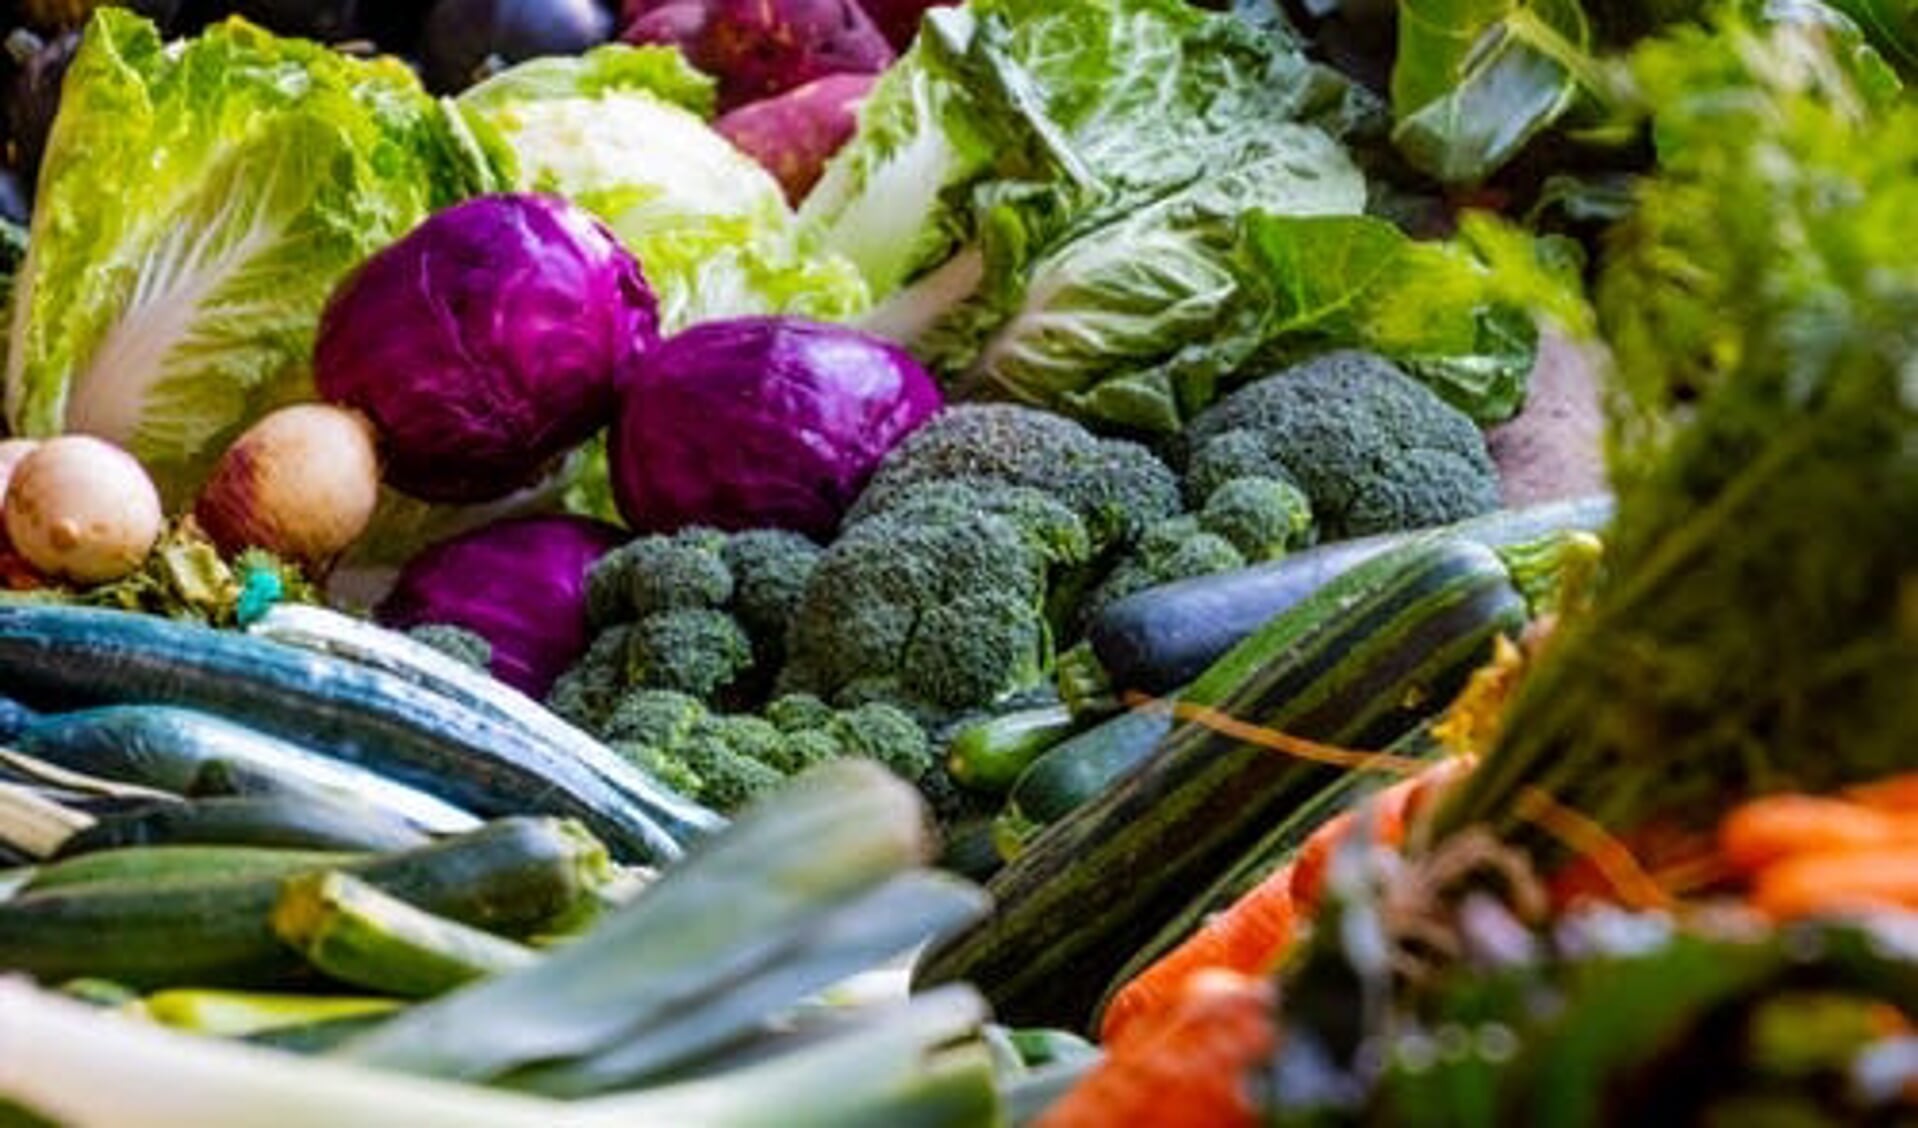 Koken met groente uit eigen tuin is ook consuminderen.